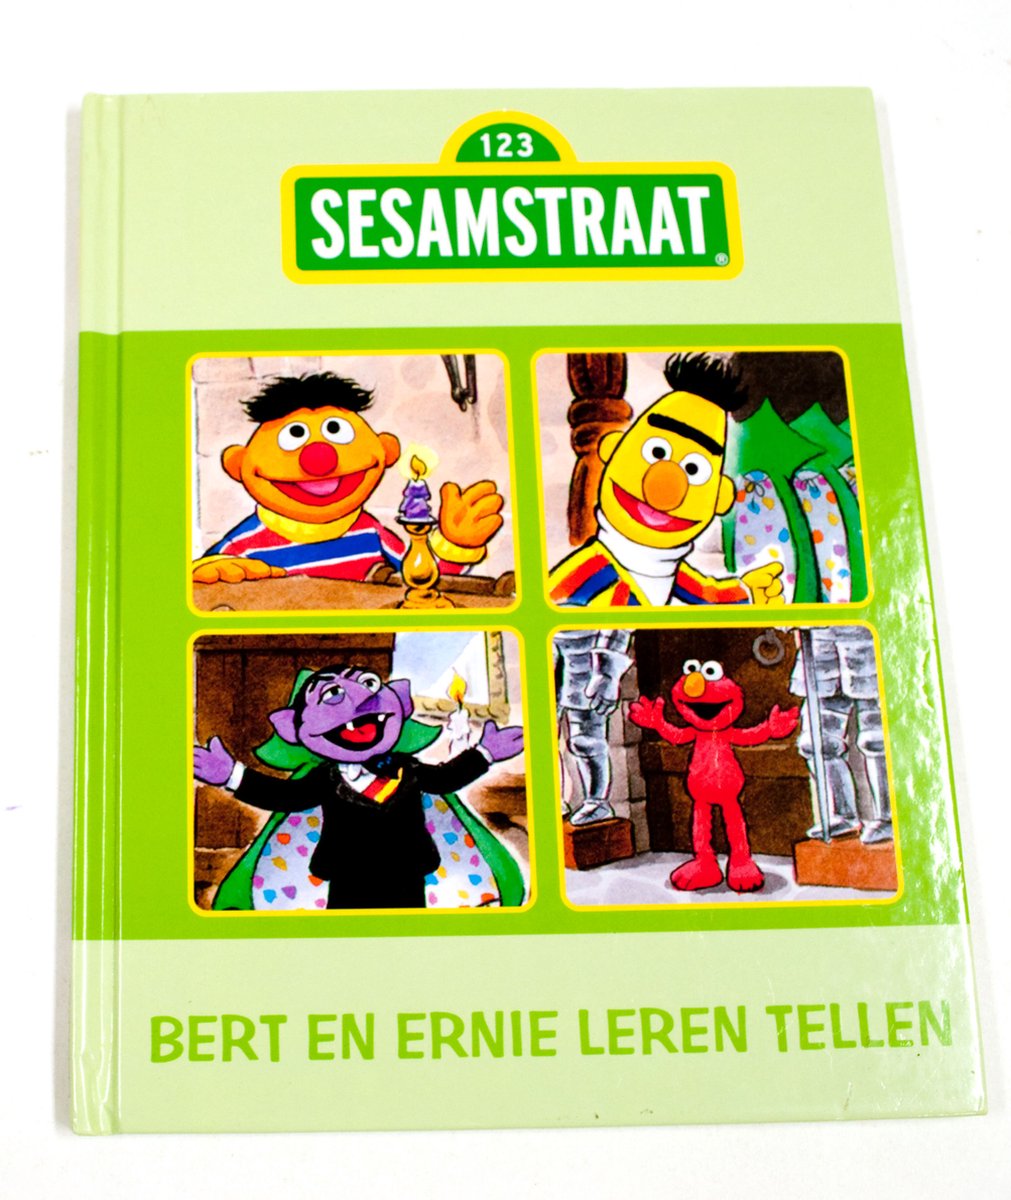 Bert en Ernie leren tellen